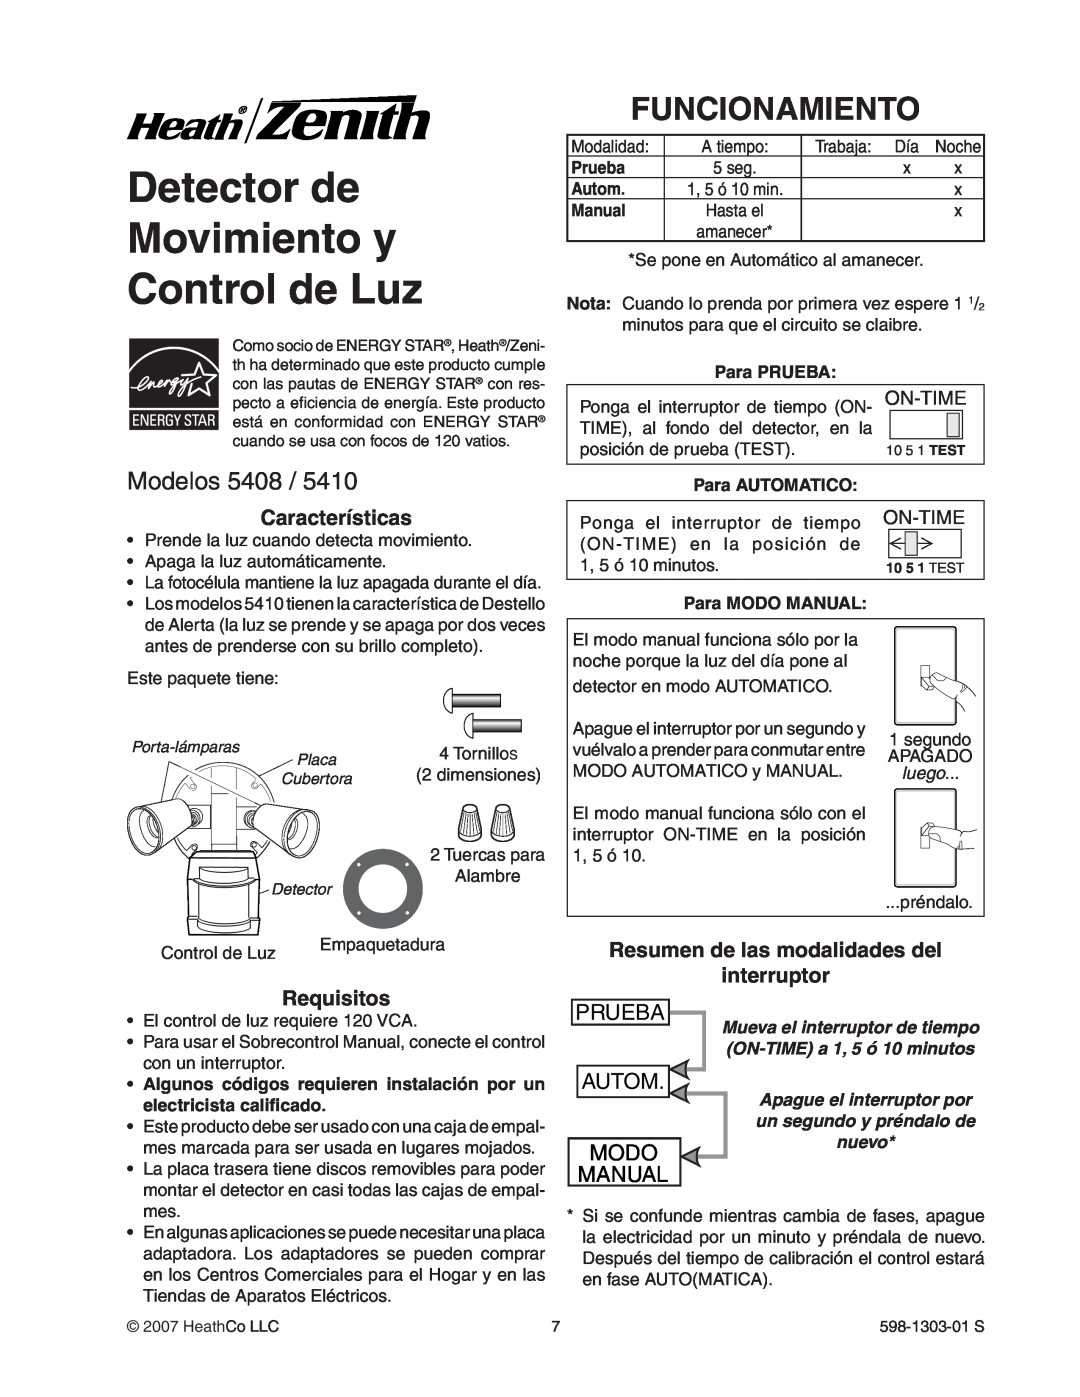 Heath Zenith 5408 / 5410 Detector de Movimiento y Control de Luz, Funcionamiento, Modelos, Prueba, Autom, Modo, Manual 